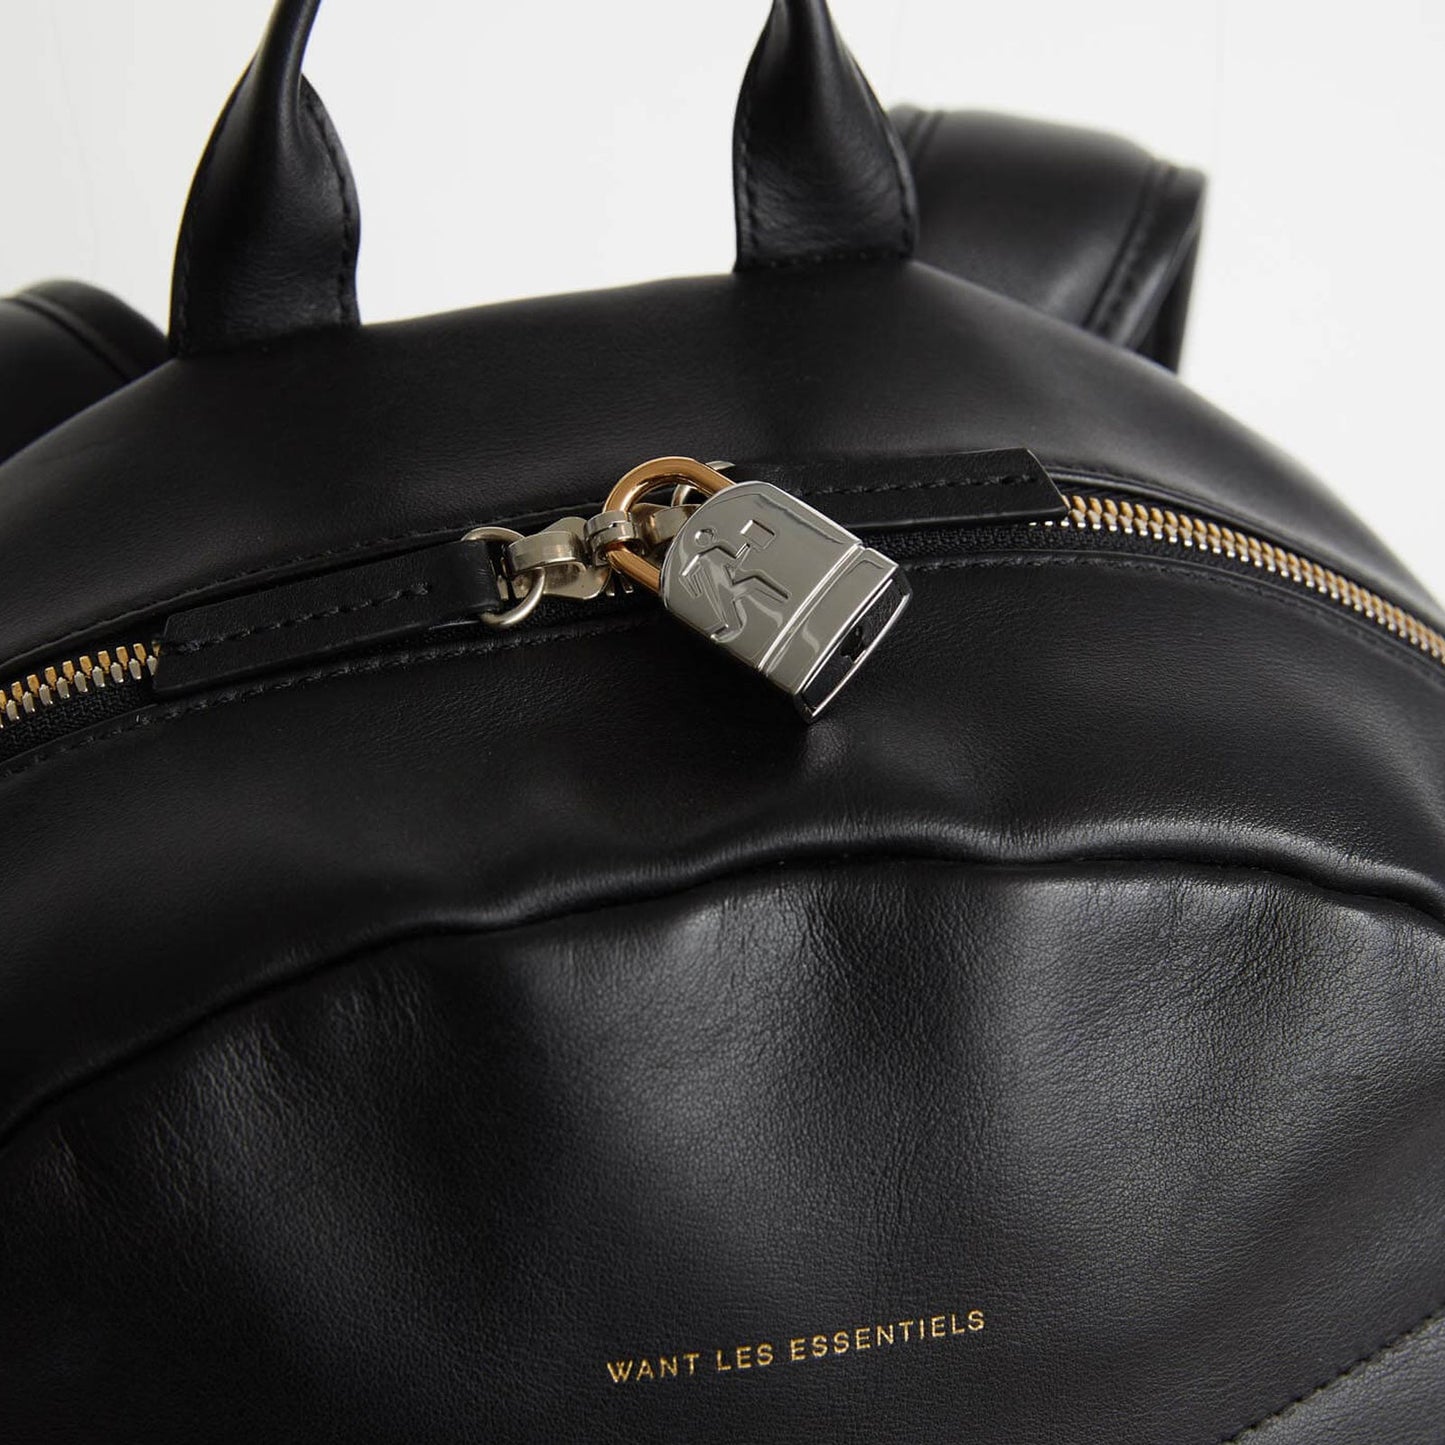 Kastrup Leather Backpack in Black